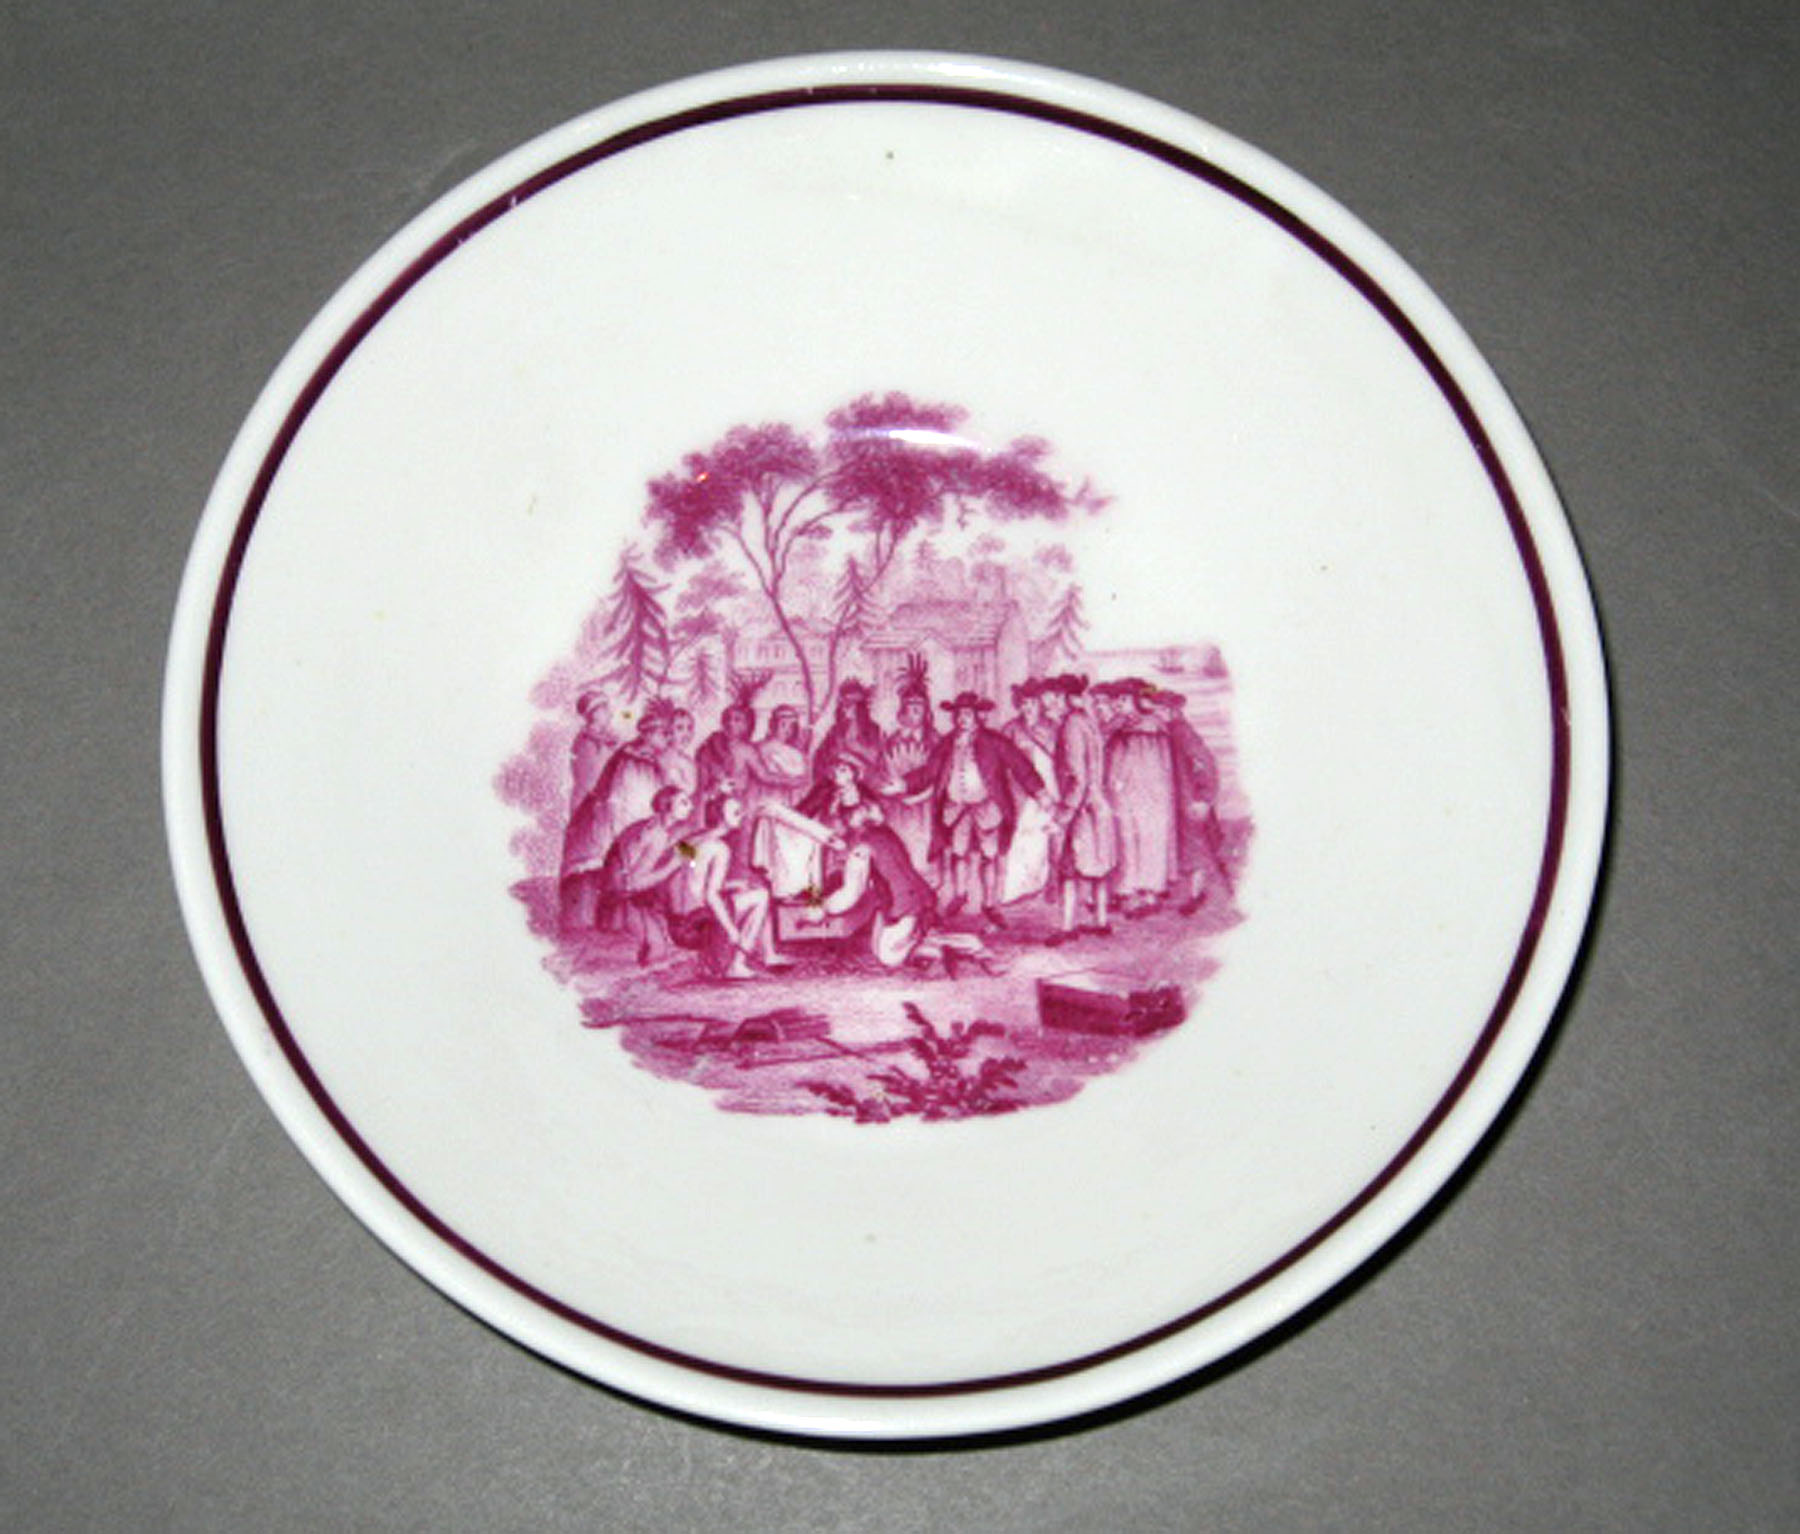 1964.1903.004 Bone-china saucer